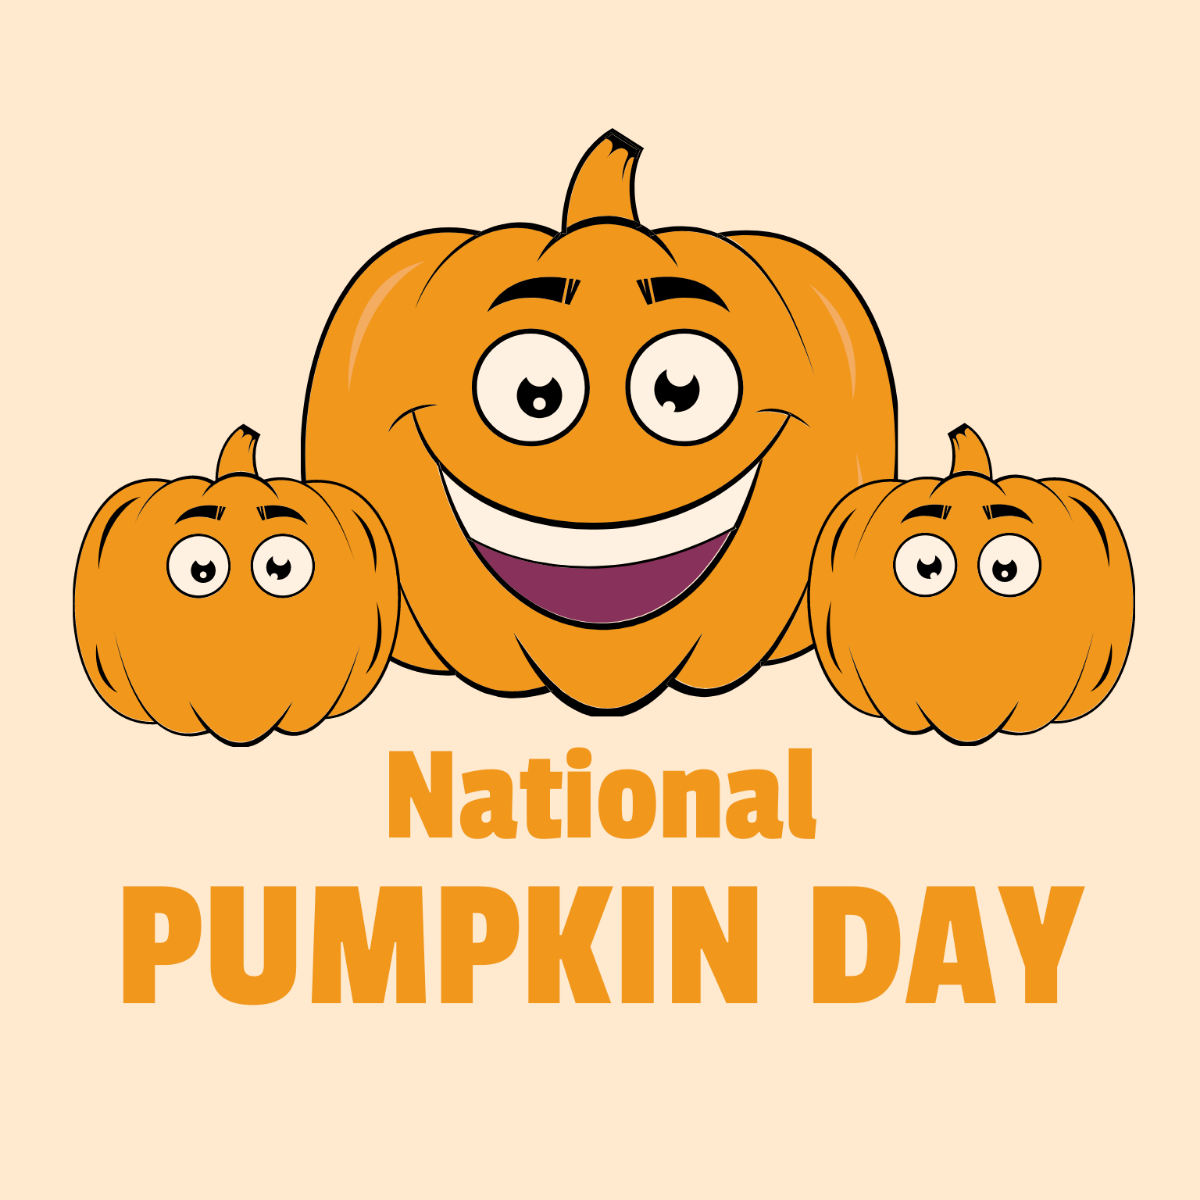 National Pumpkin Day Cartoon Vector Template